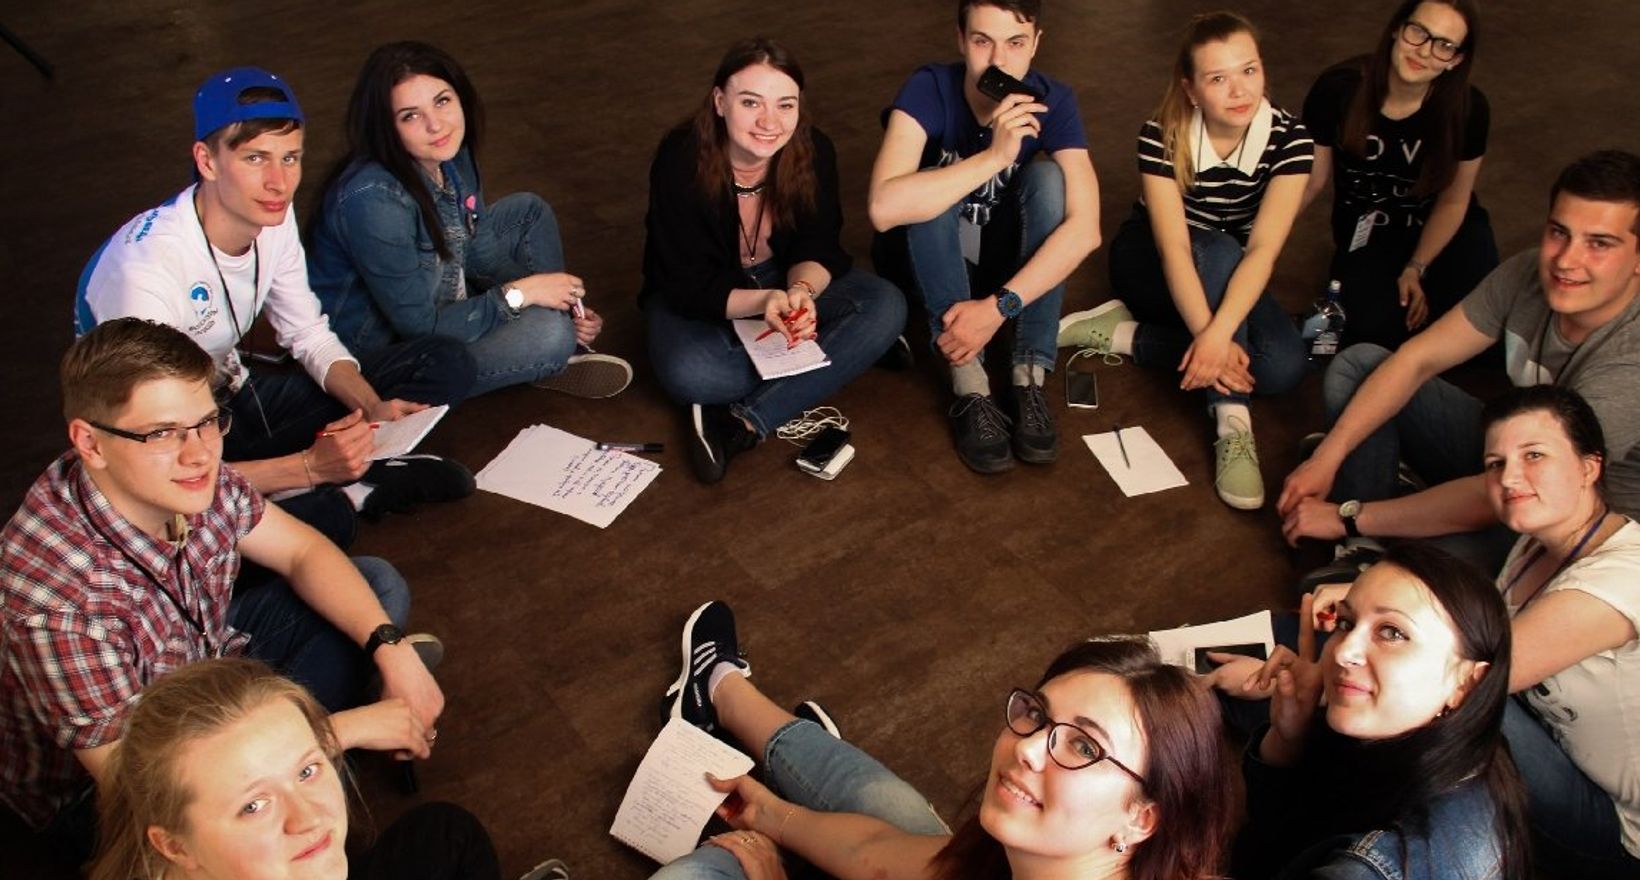 Сообщество молодежи. Современная молодежь. Группа молодежи. Самодеятельность молодежи. Творческая молодежь.